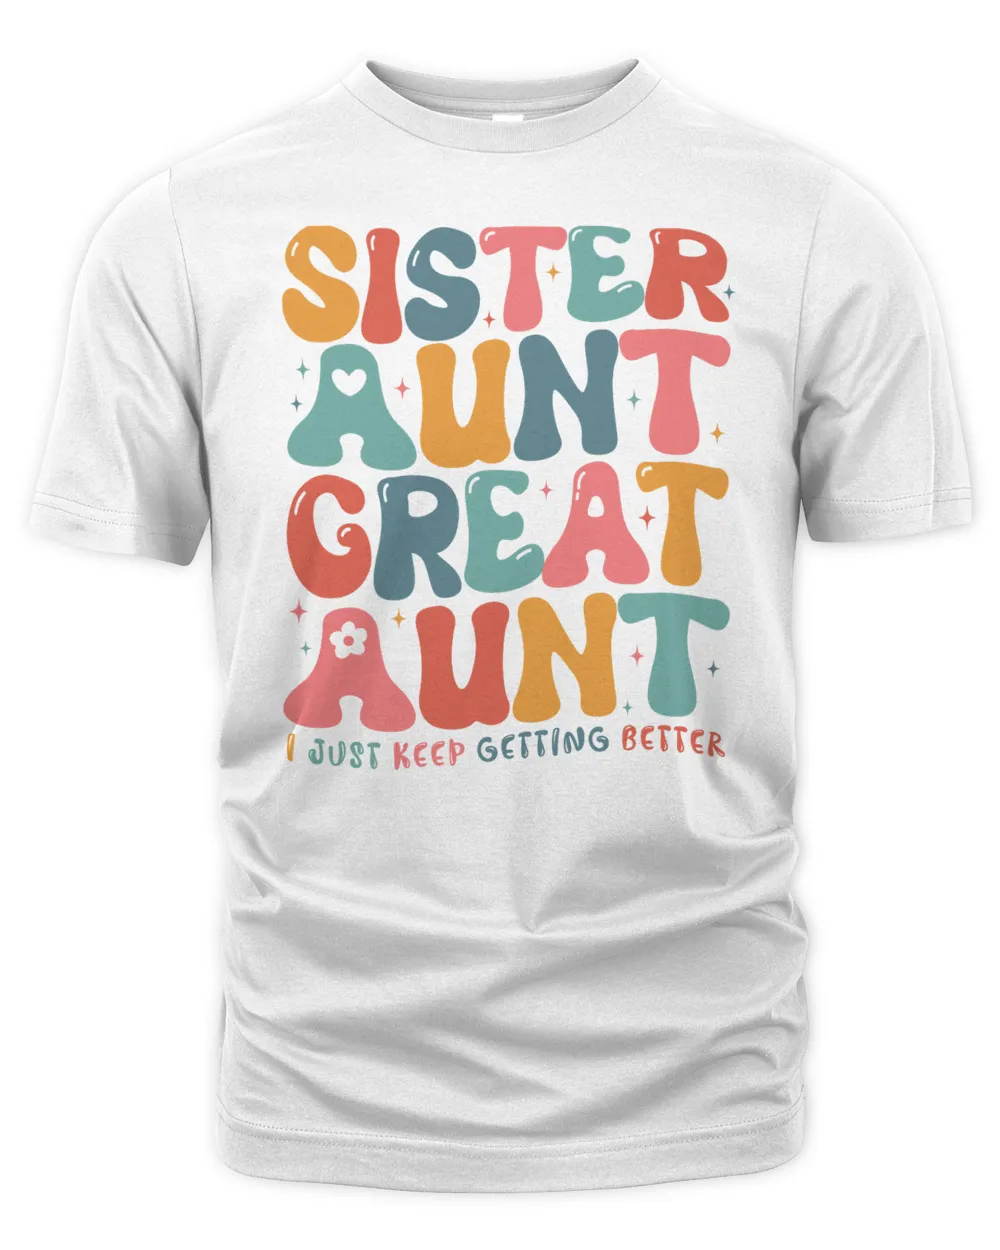 Sister Aunt Great Aunt Sweatshirt, Hoodies, Tote Bag, Canvas